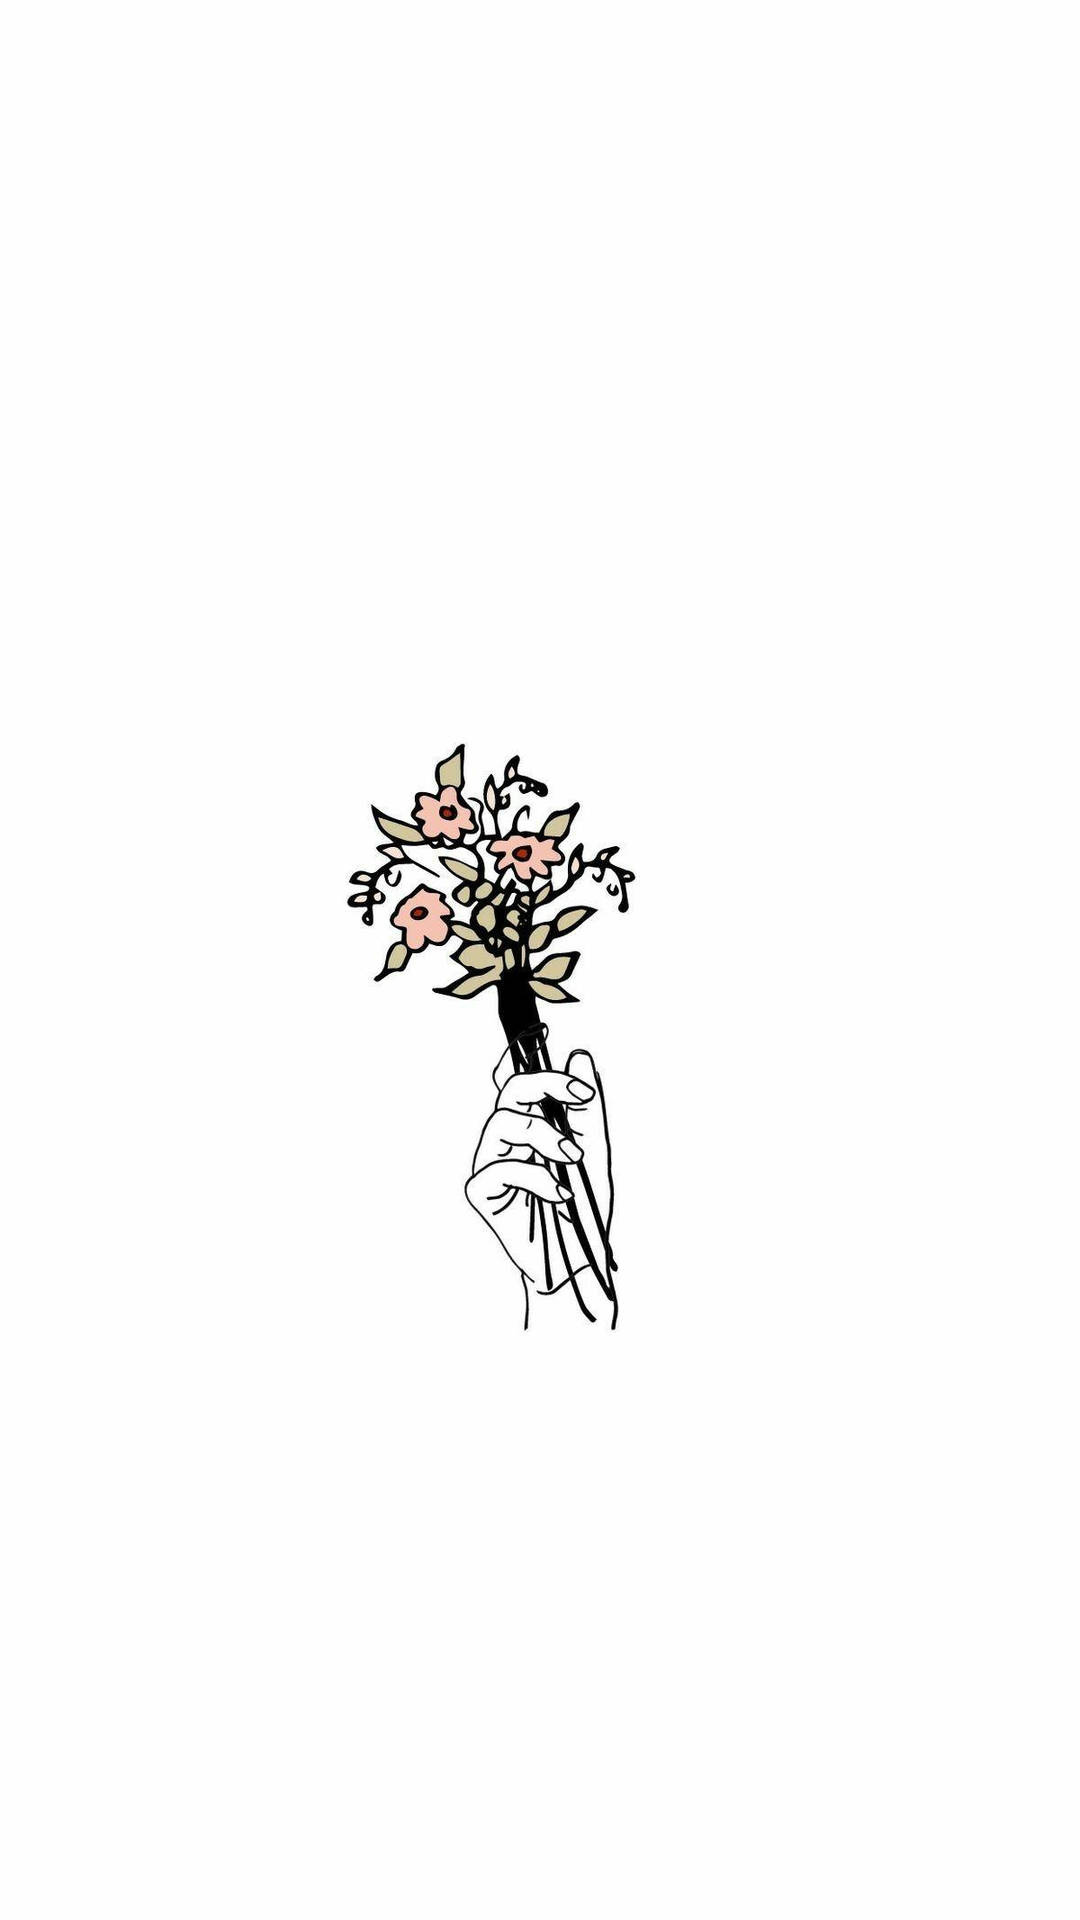 White Minimalist Hand Holding A Flower